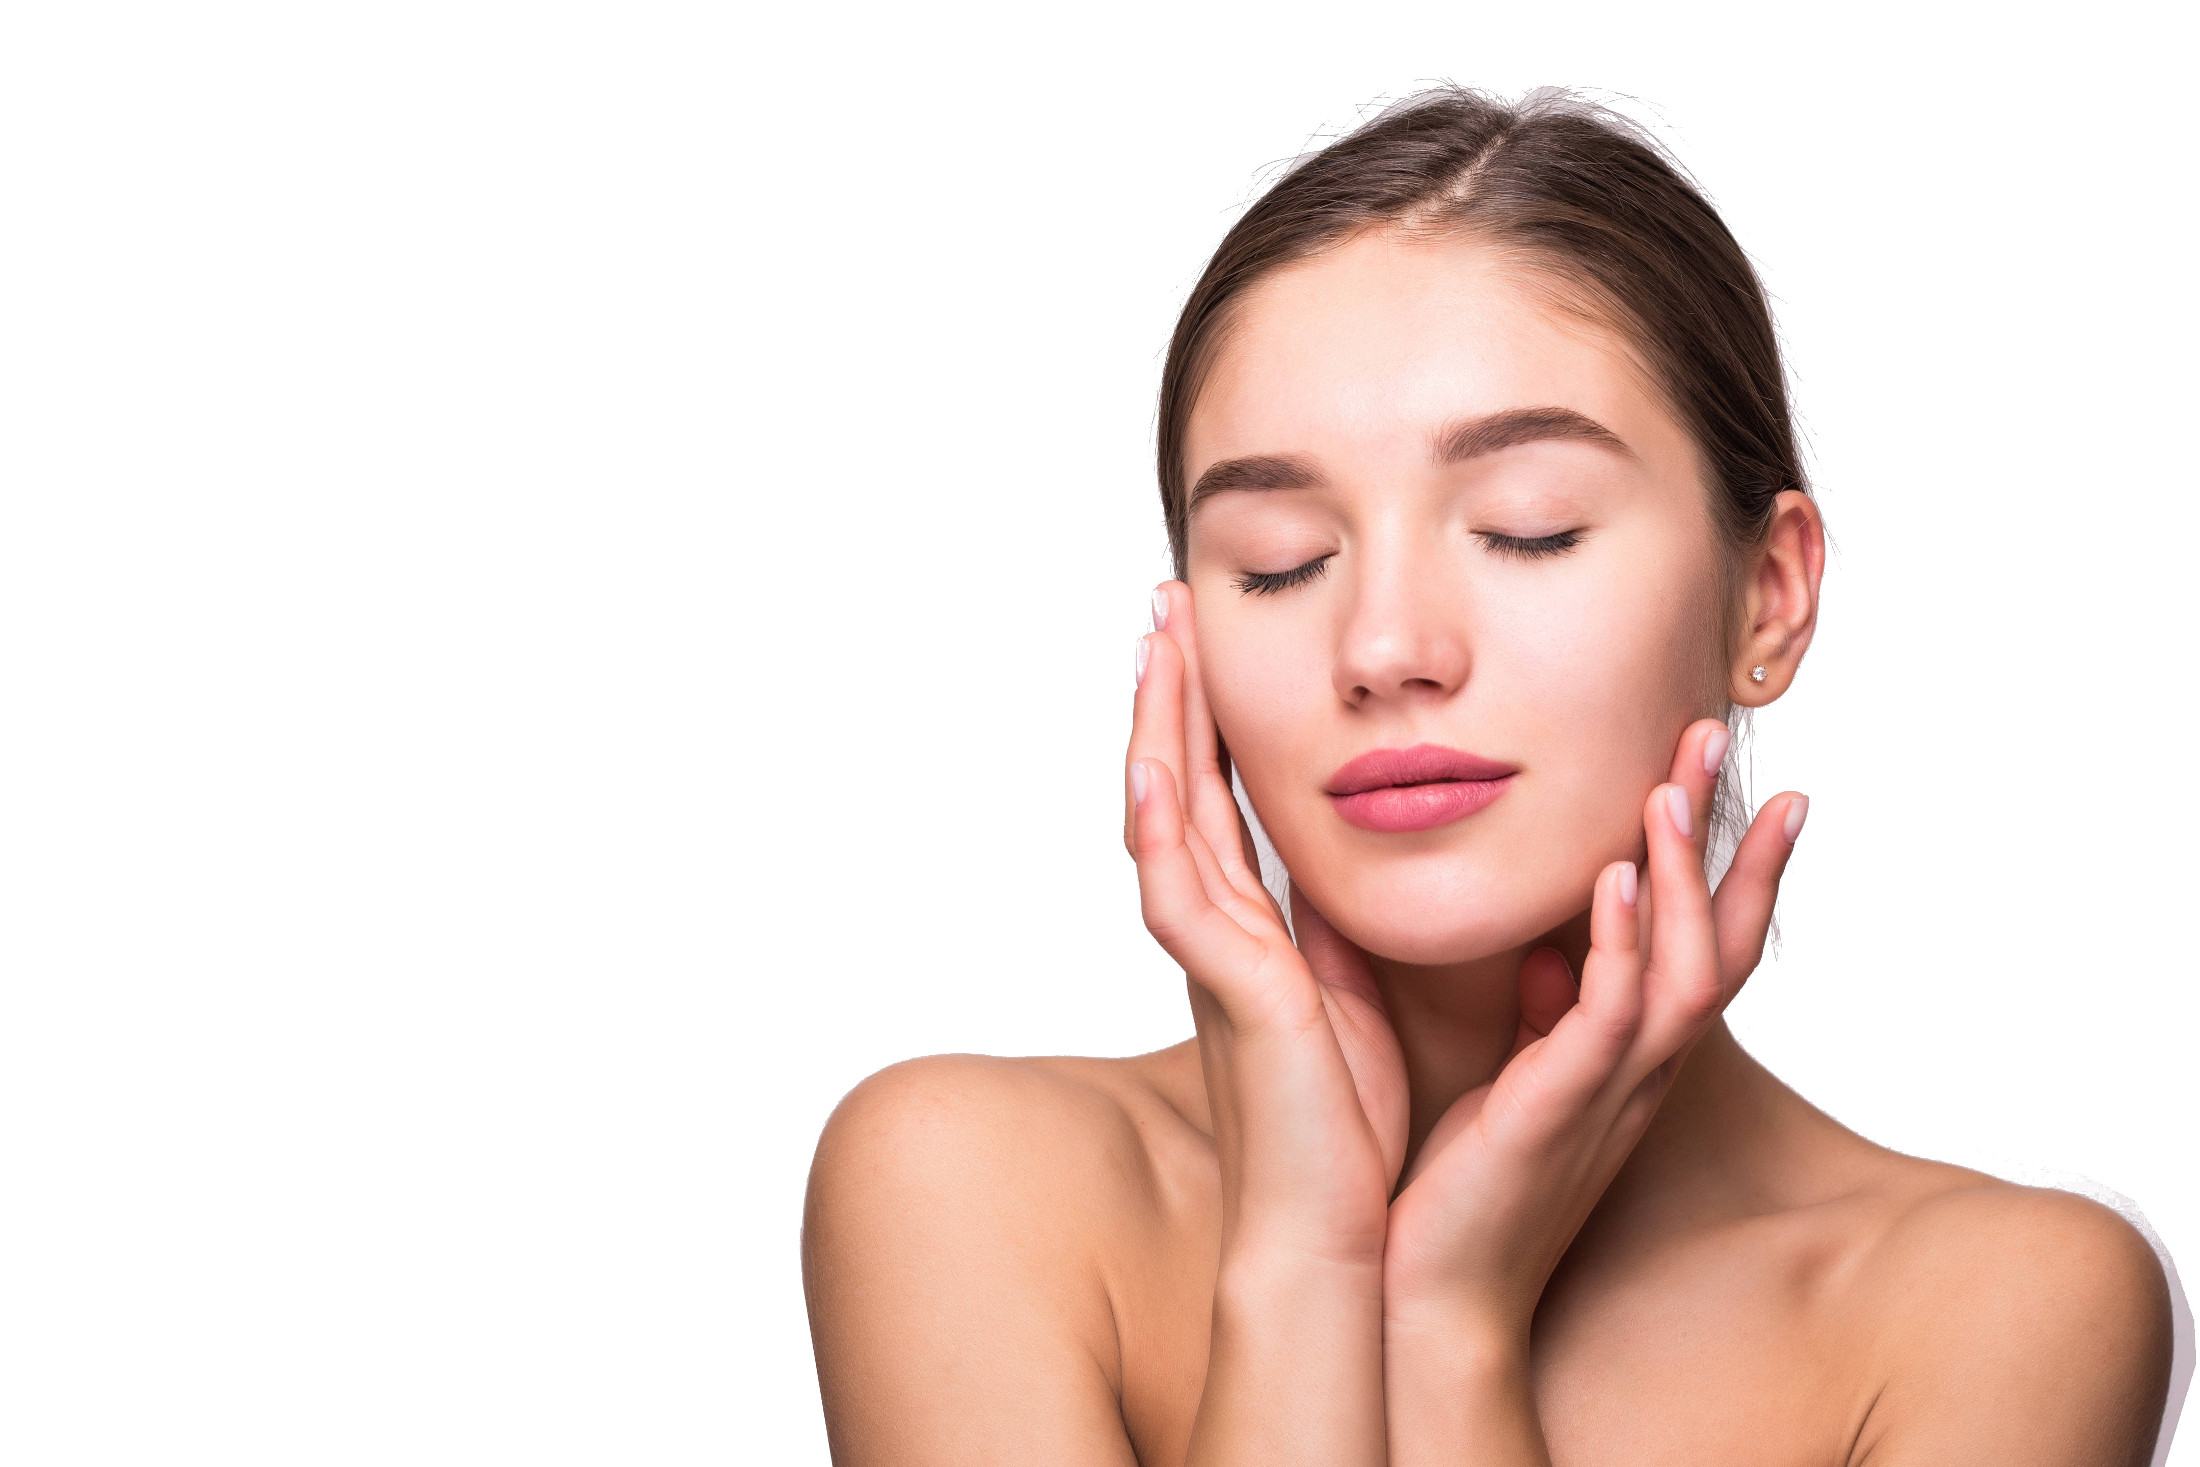 Bandon Beauty Beauty Skin Treatments